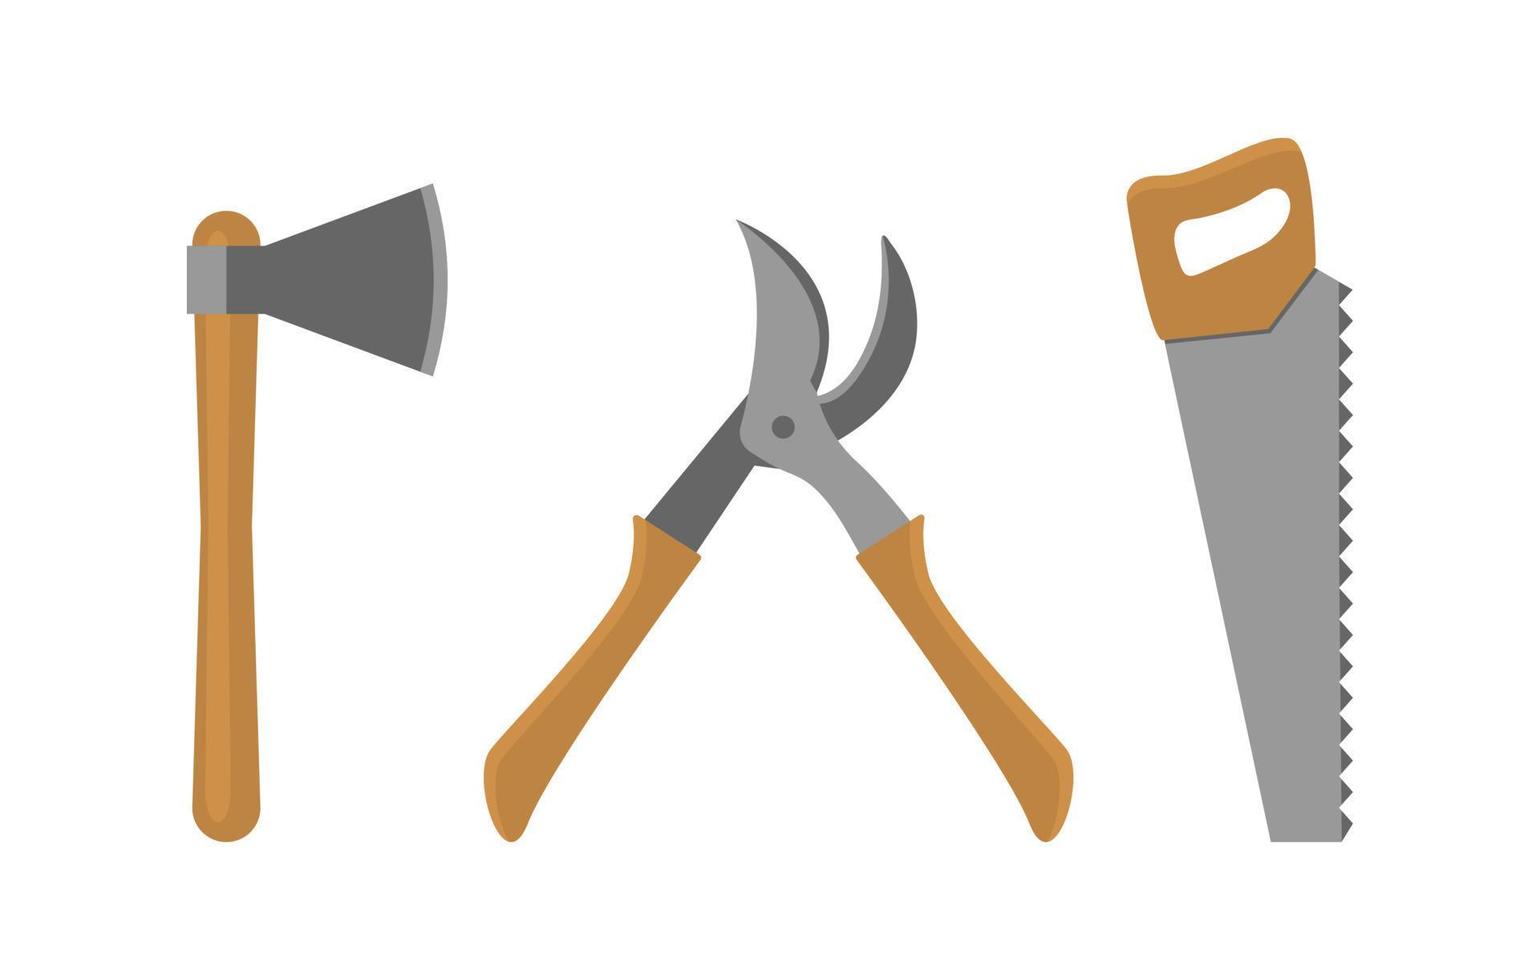 ferramentas para cortar, serrar e podar árvores. machado, serra e tesouras de podar. vetor